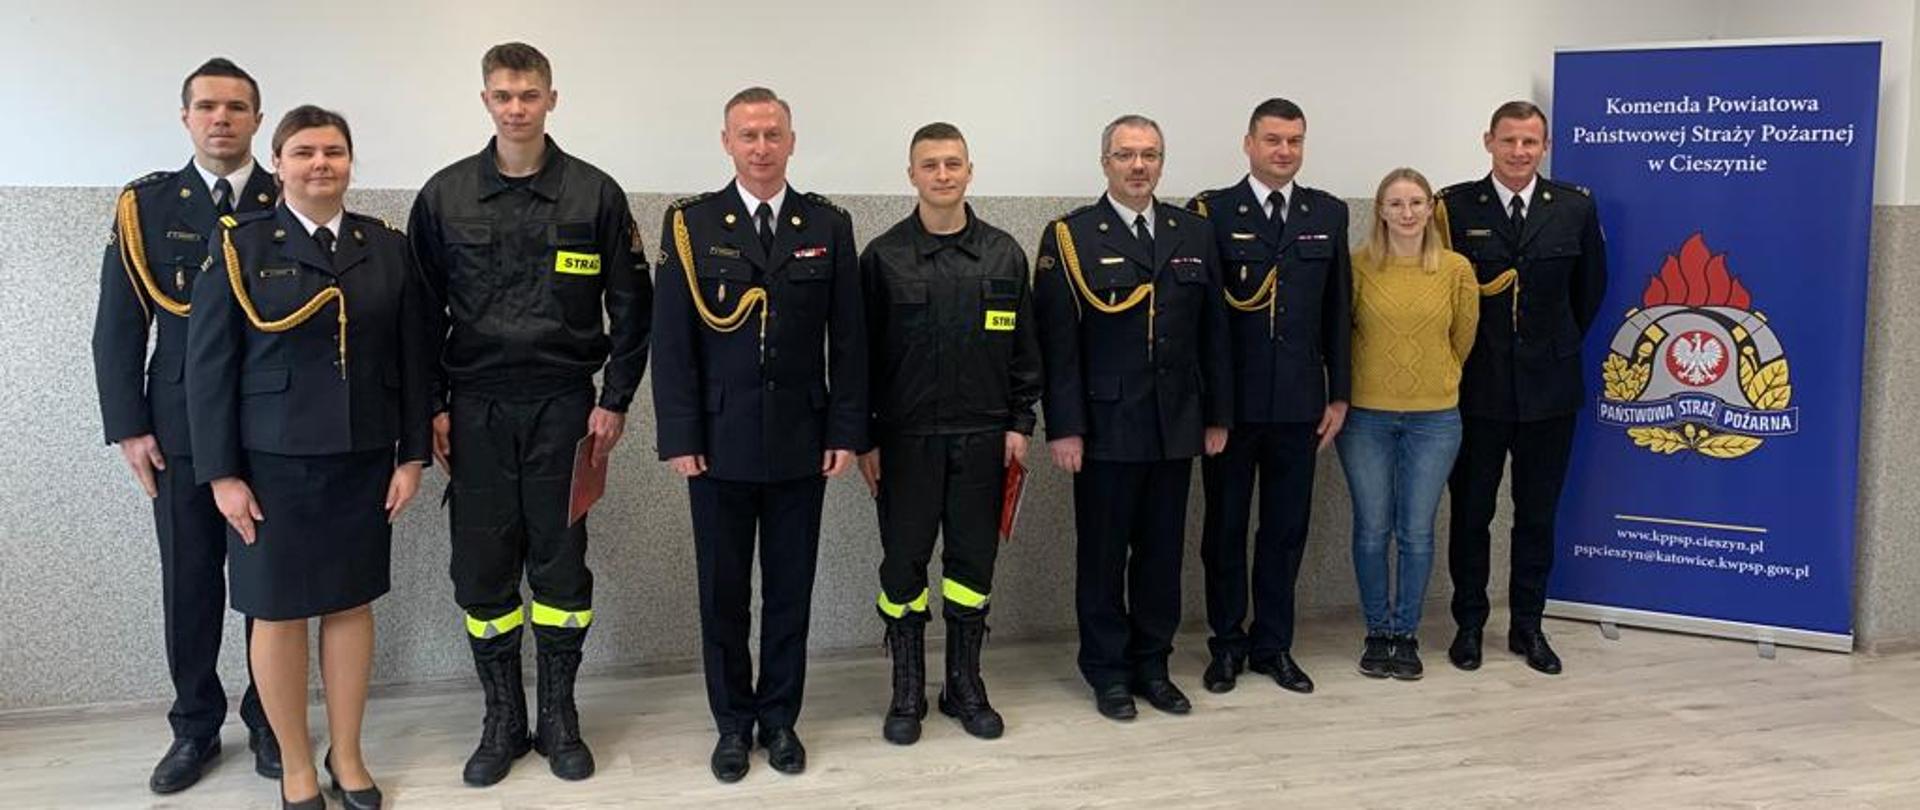 Nowi funkcjonariusze w szeregach KP PSP w Cieszynie - wspólne zdjęcie.